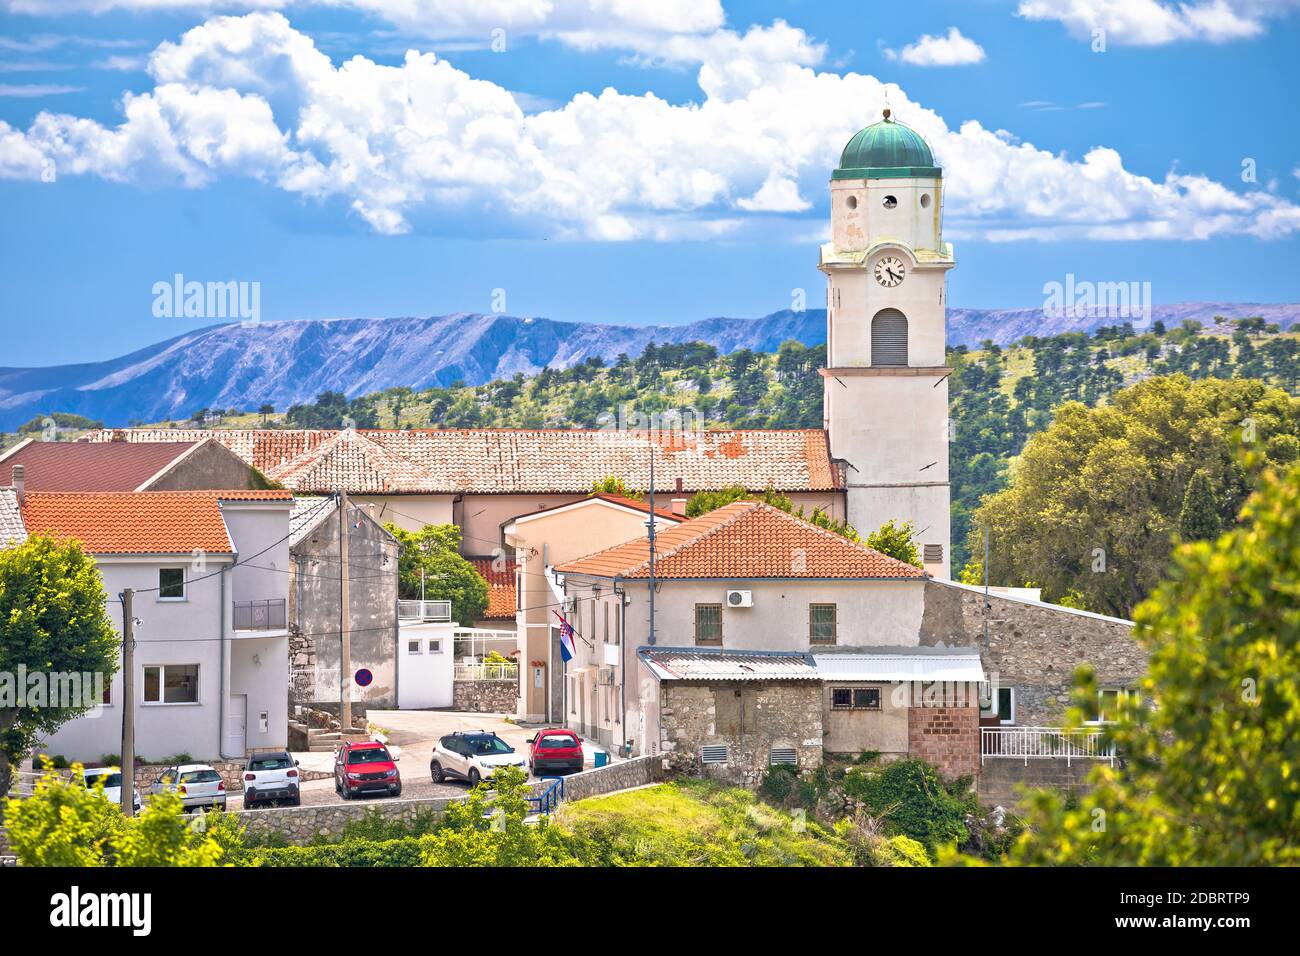 Historic town of Bribir in Vinodol valley view, Kvarner region of Croatia Stock Photo